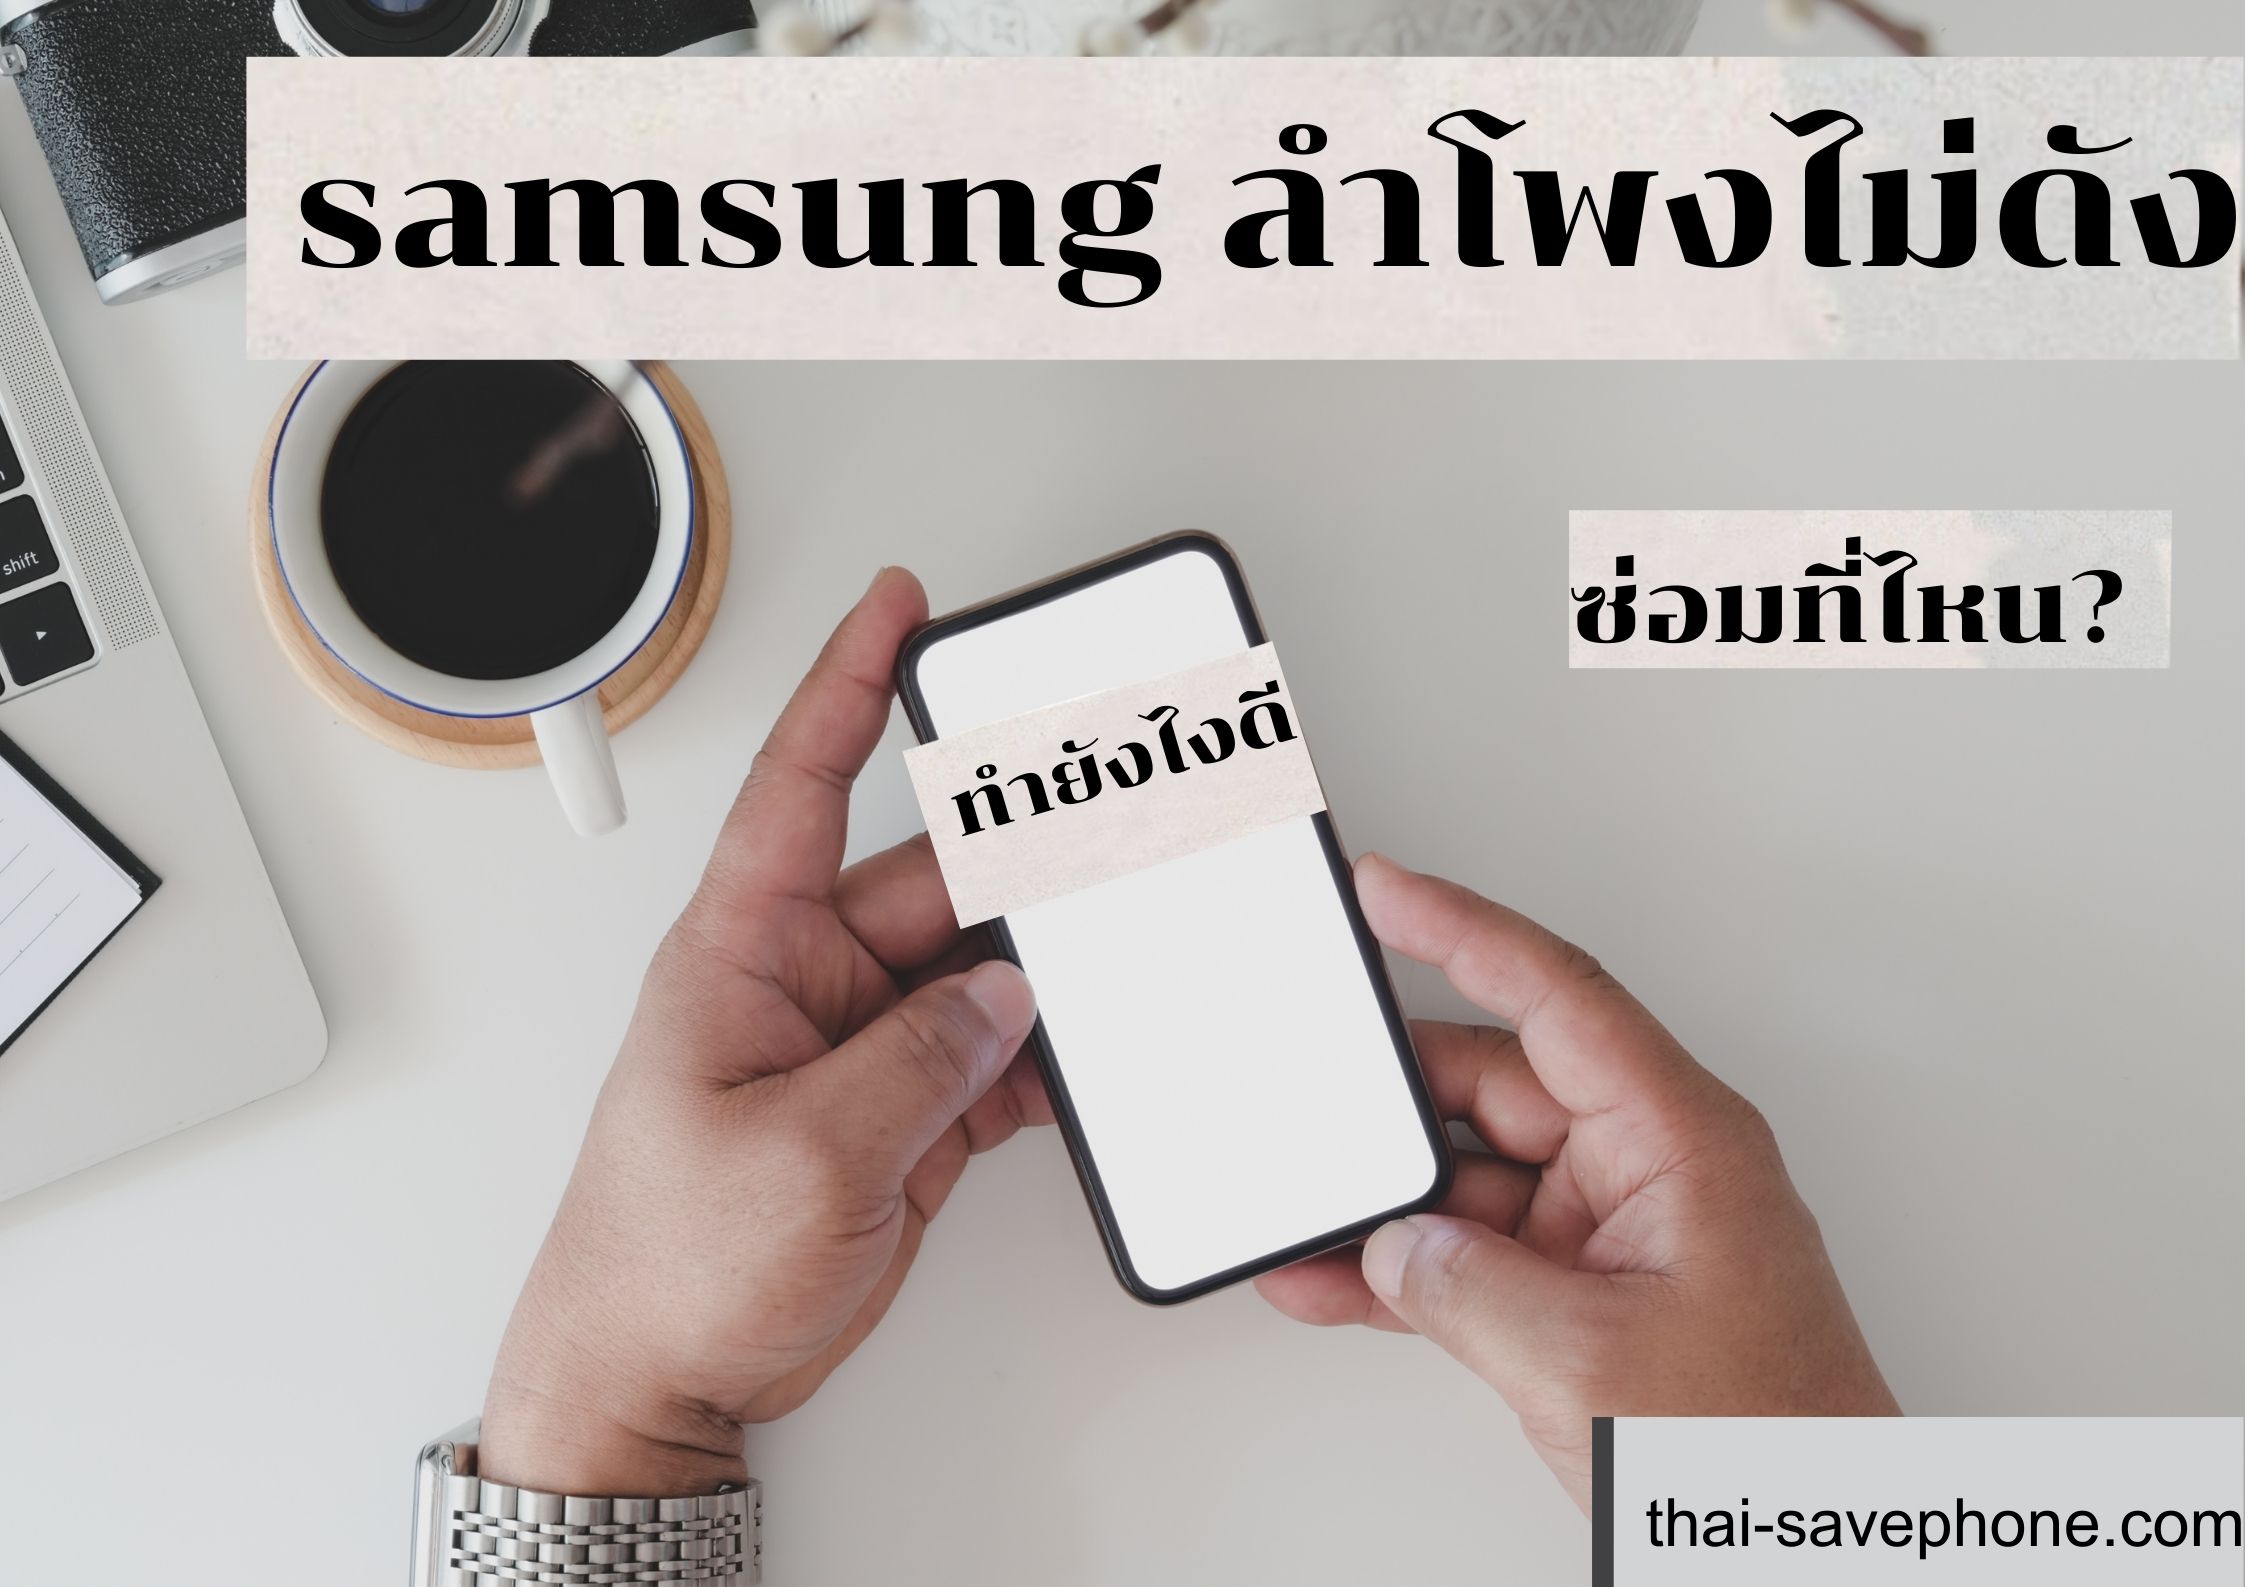 มือถือ Samsung ลำโพงไม่ดังทำยังไงดี - ร้านซ่อมโทรศัพท์มือถือ ออนไลน์ - ร้านซ่อมโทรศัพท์มือถือ ออนไลน์